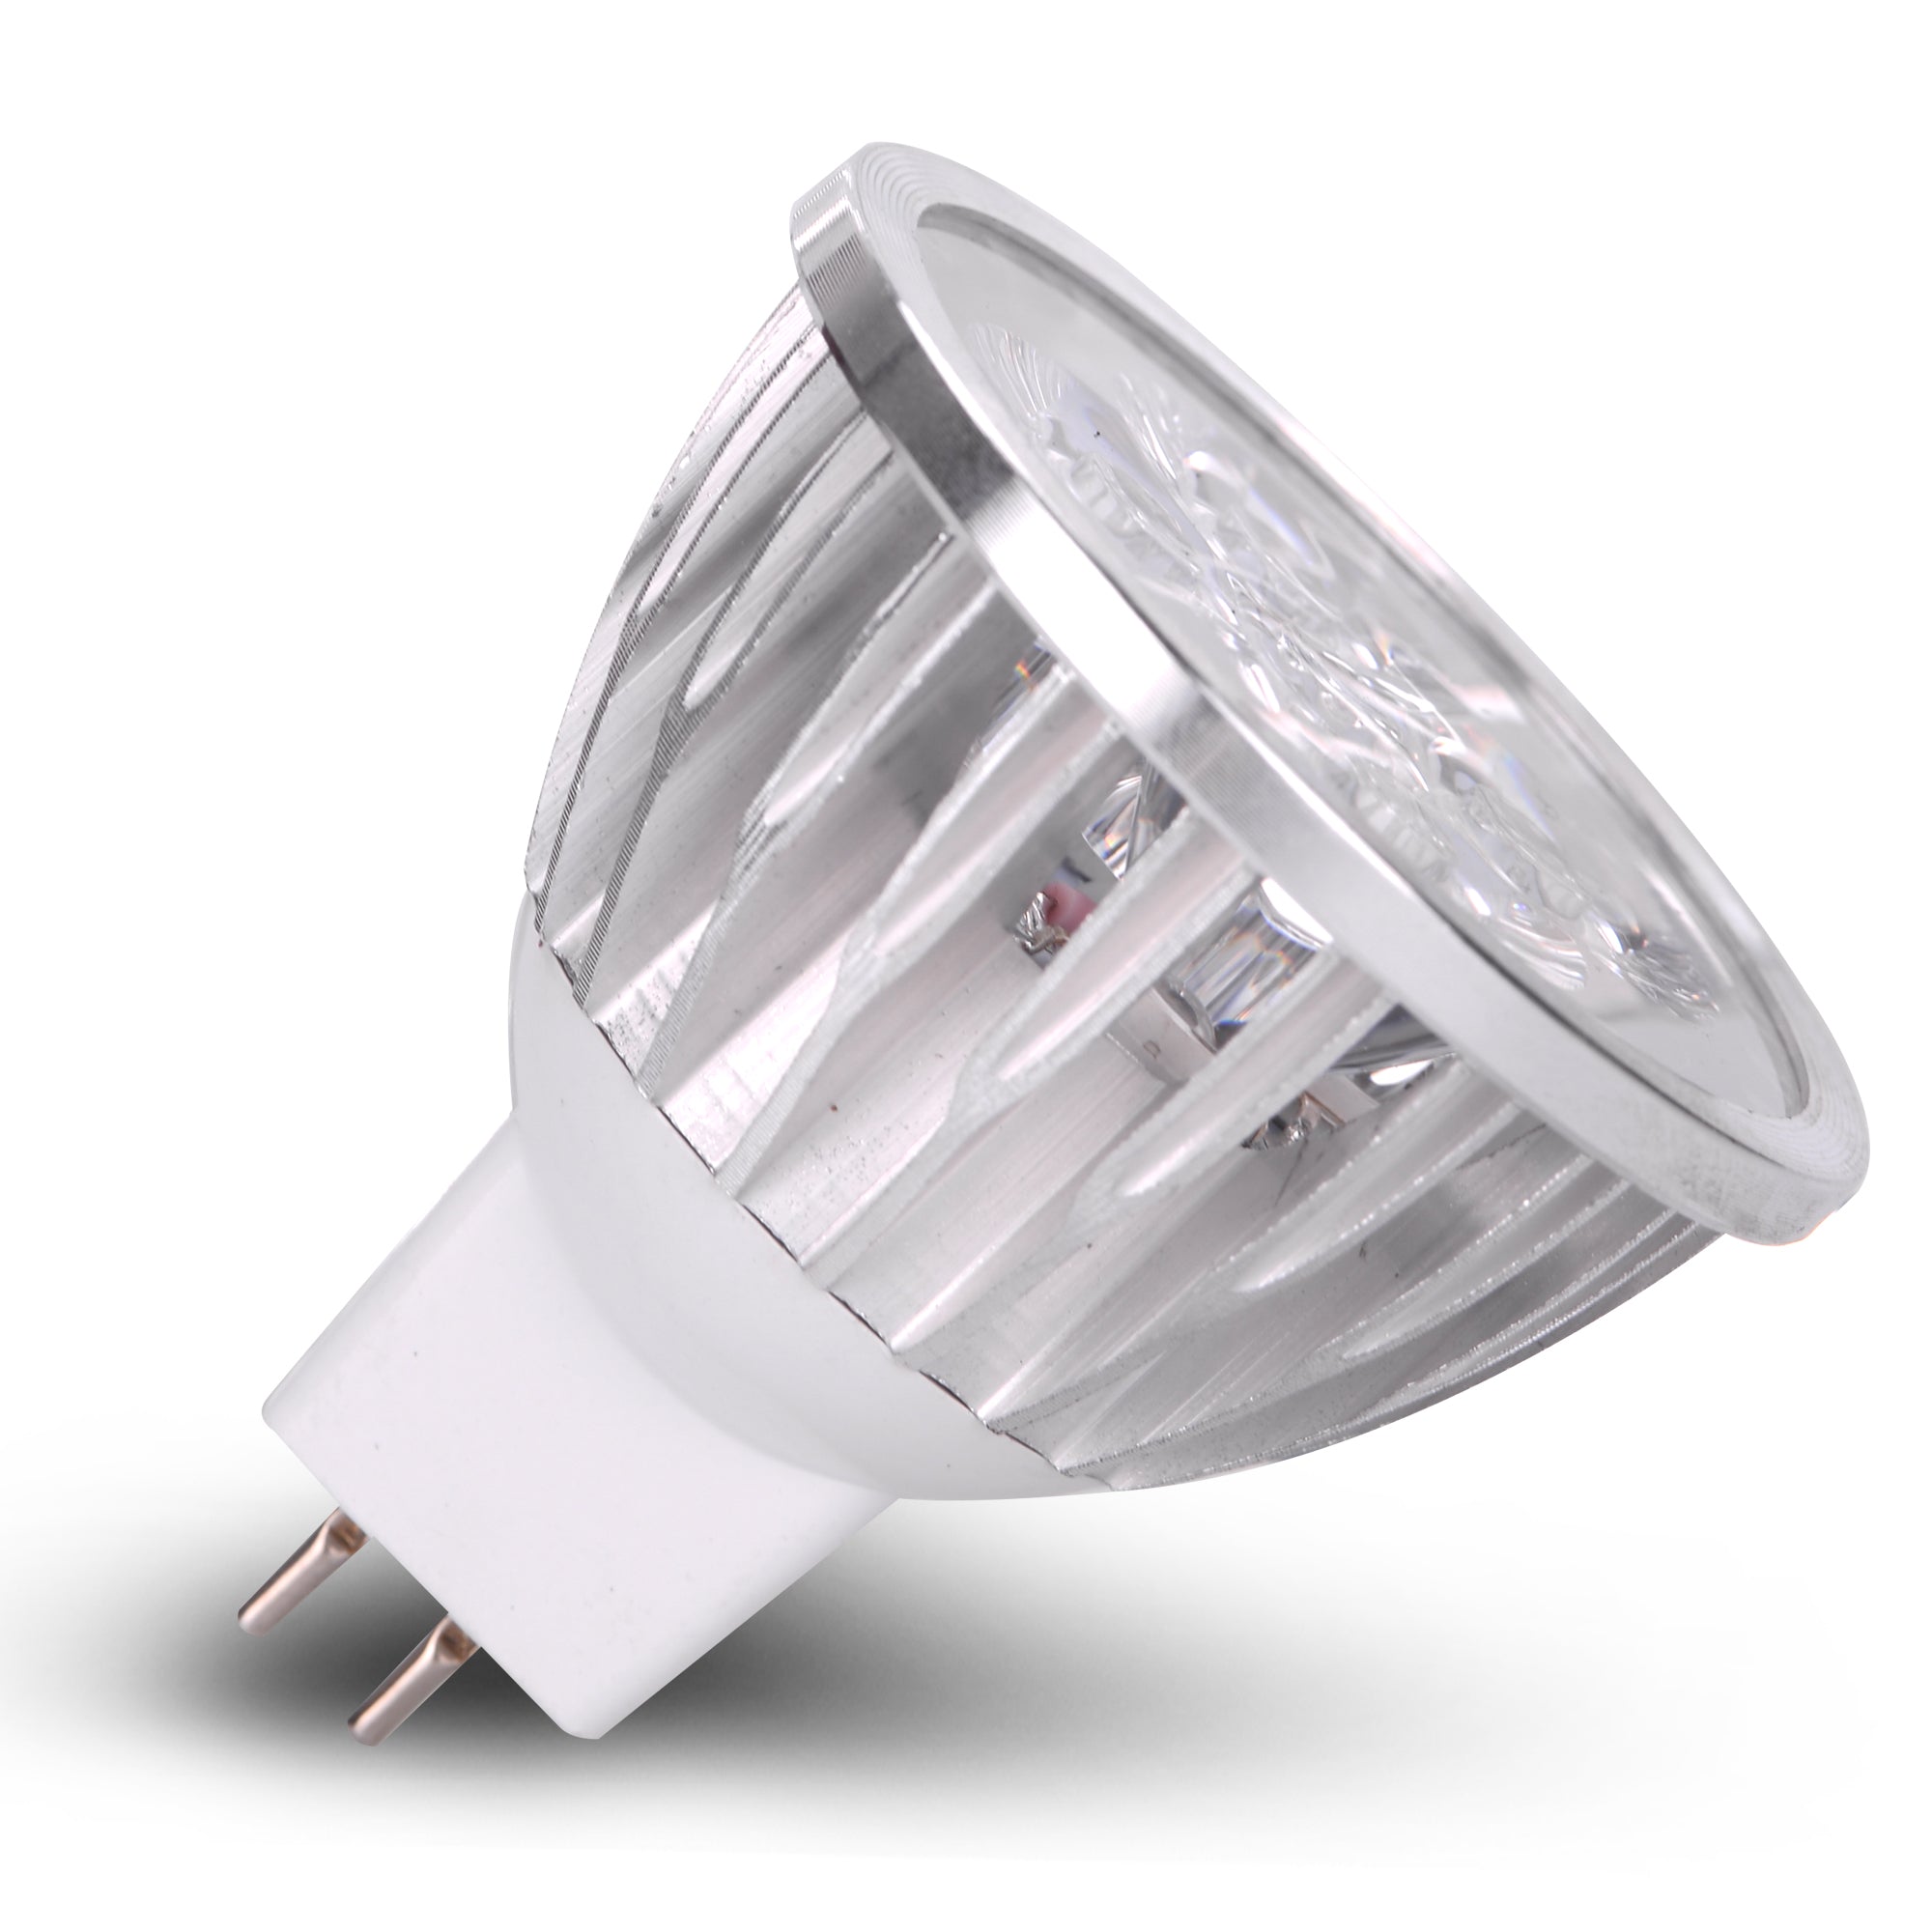 Volt 4 Watt LED Light Spot MR16 GU5.3 Bi Pin Track Lamp - 12VMonster Lighting